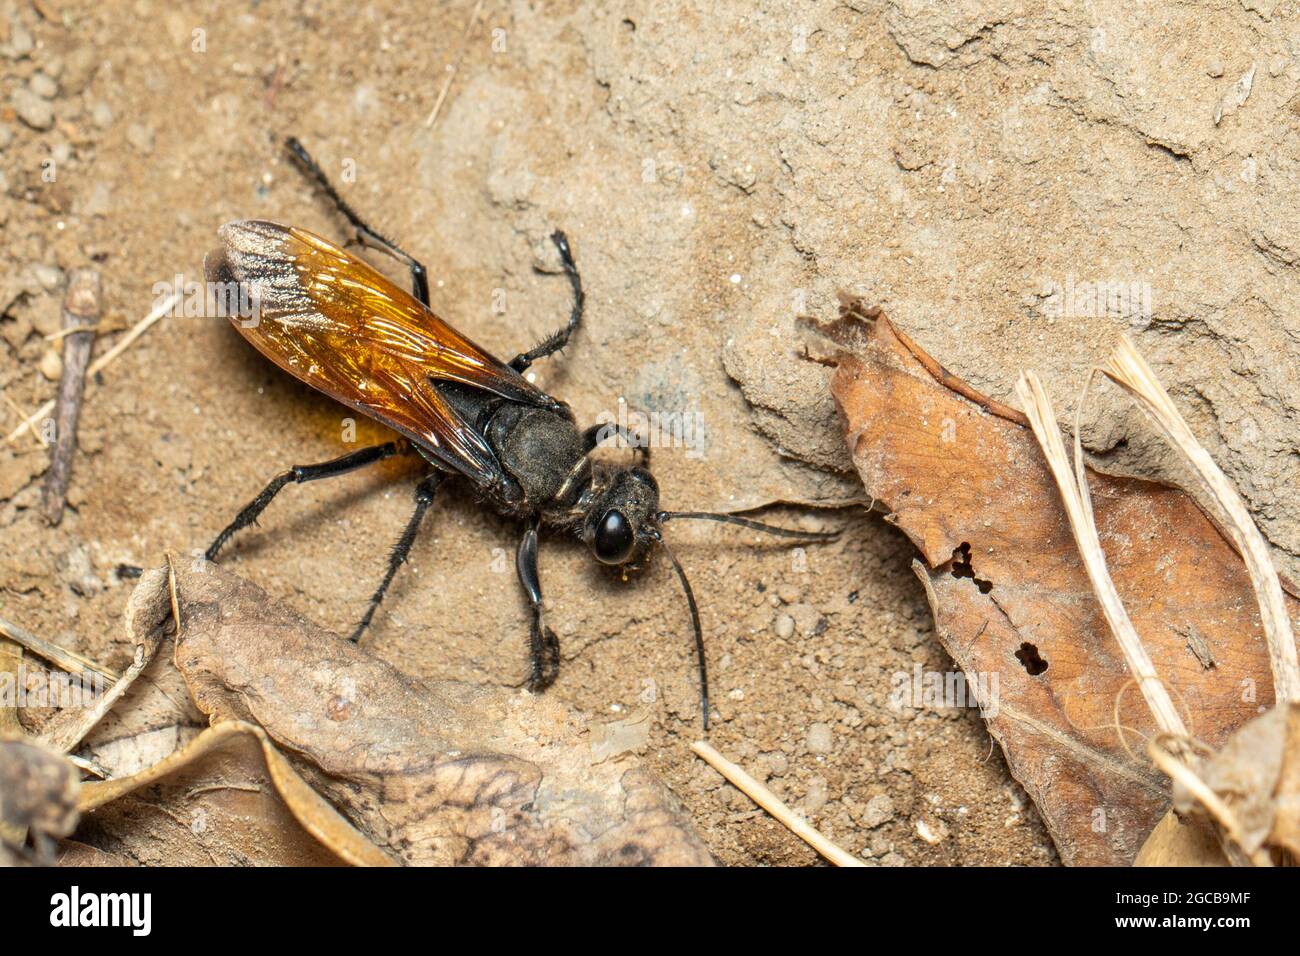 Imagen de la avispa del digger de arena sobre el fondo del suelo., Insect. Animal. Foto de stock